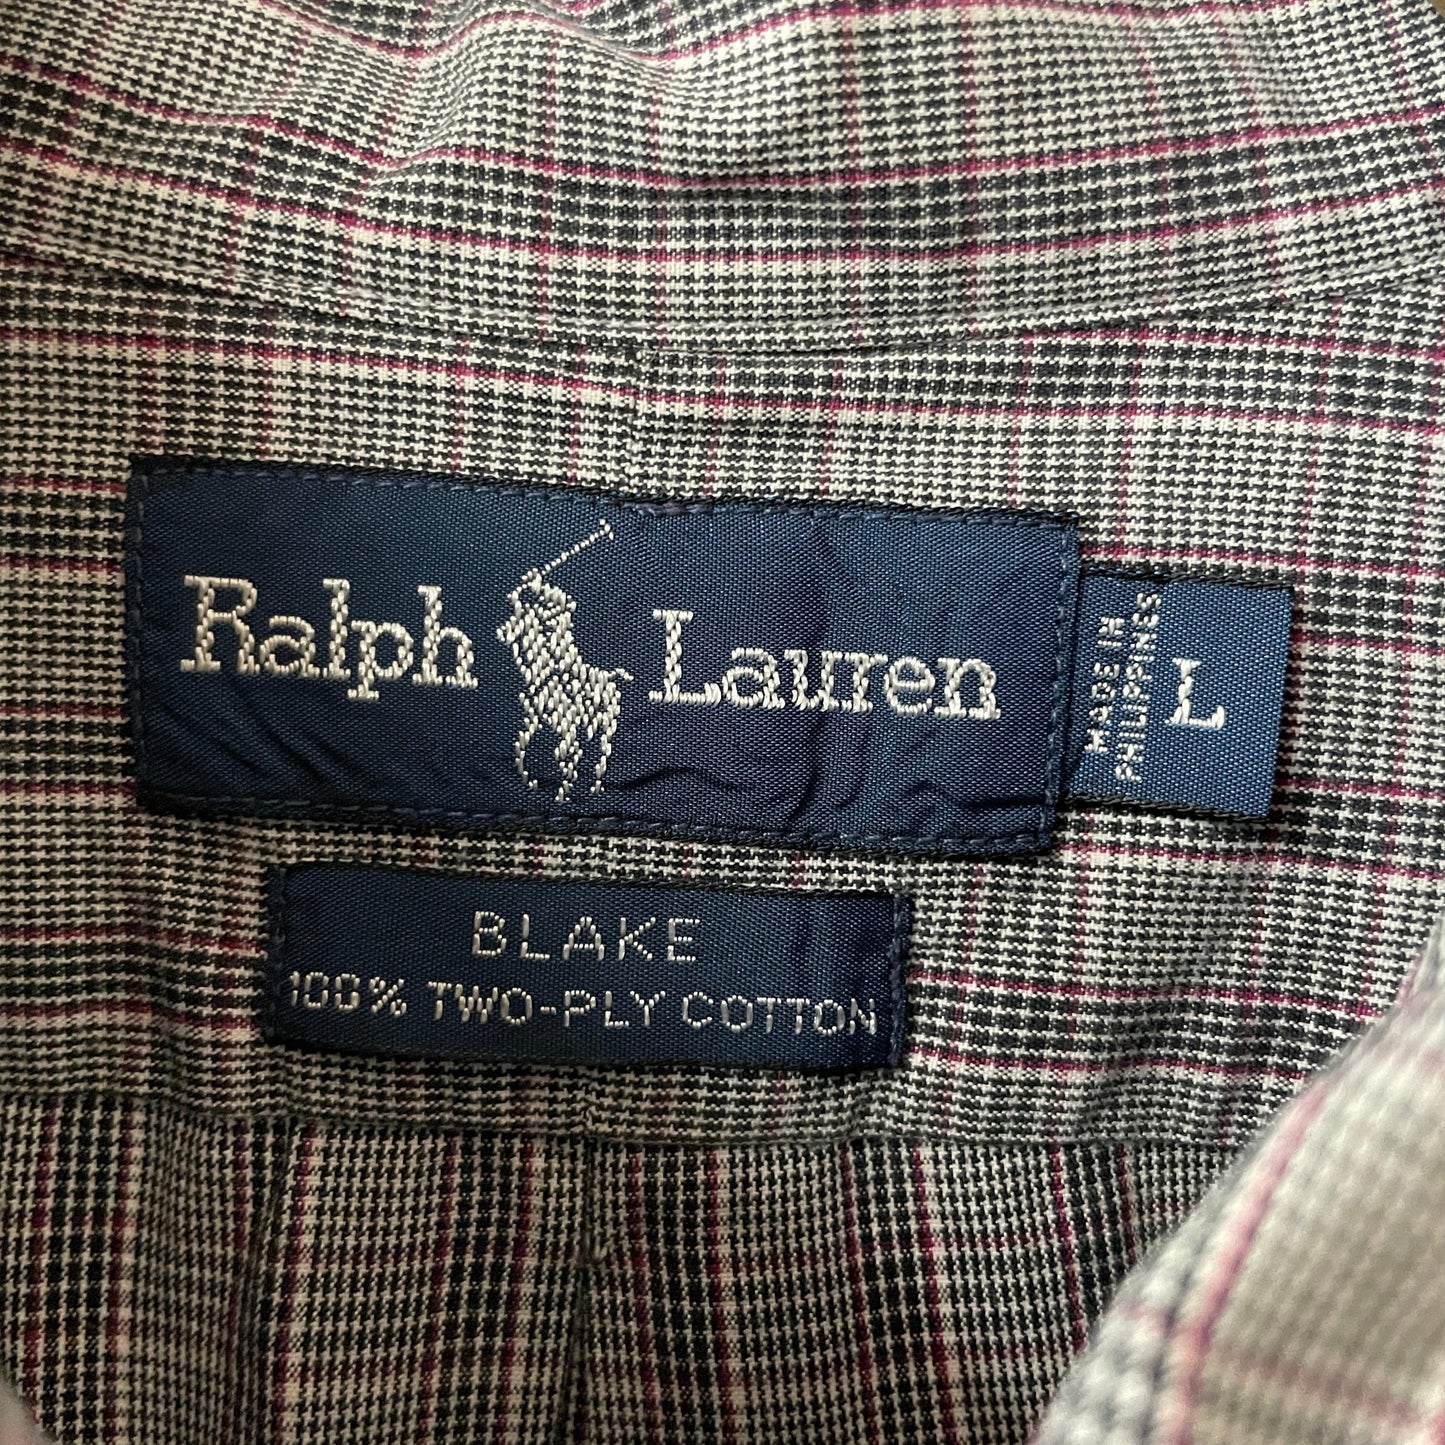 Ralph LaurenBLAKE 100% two-plycotton shirt BD shirt button down check